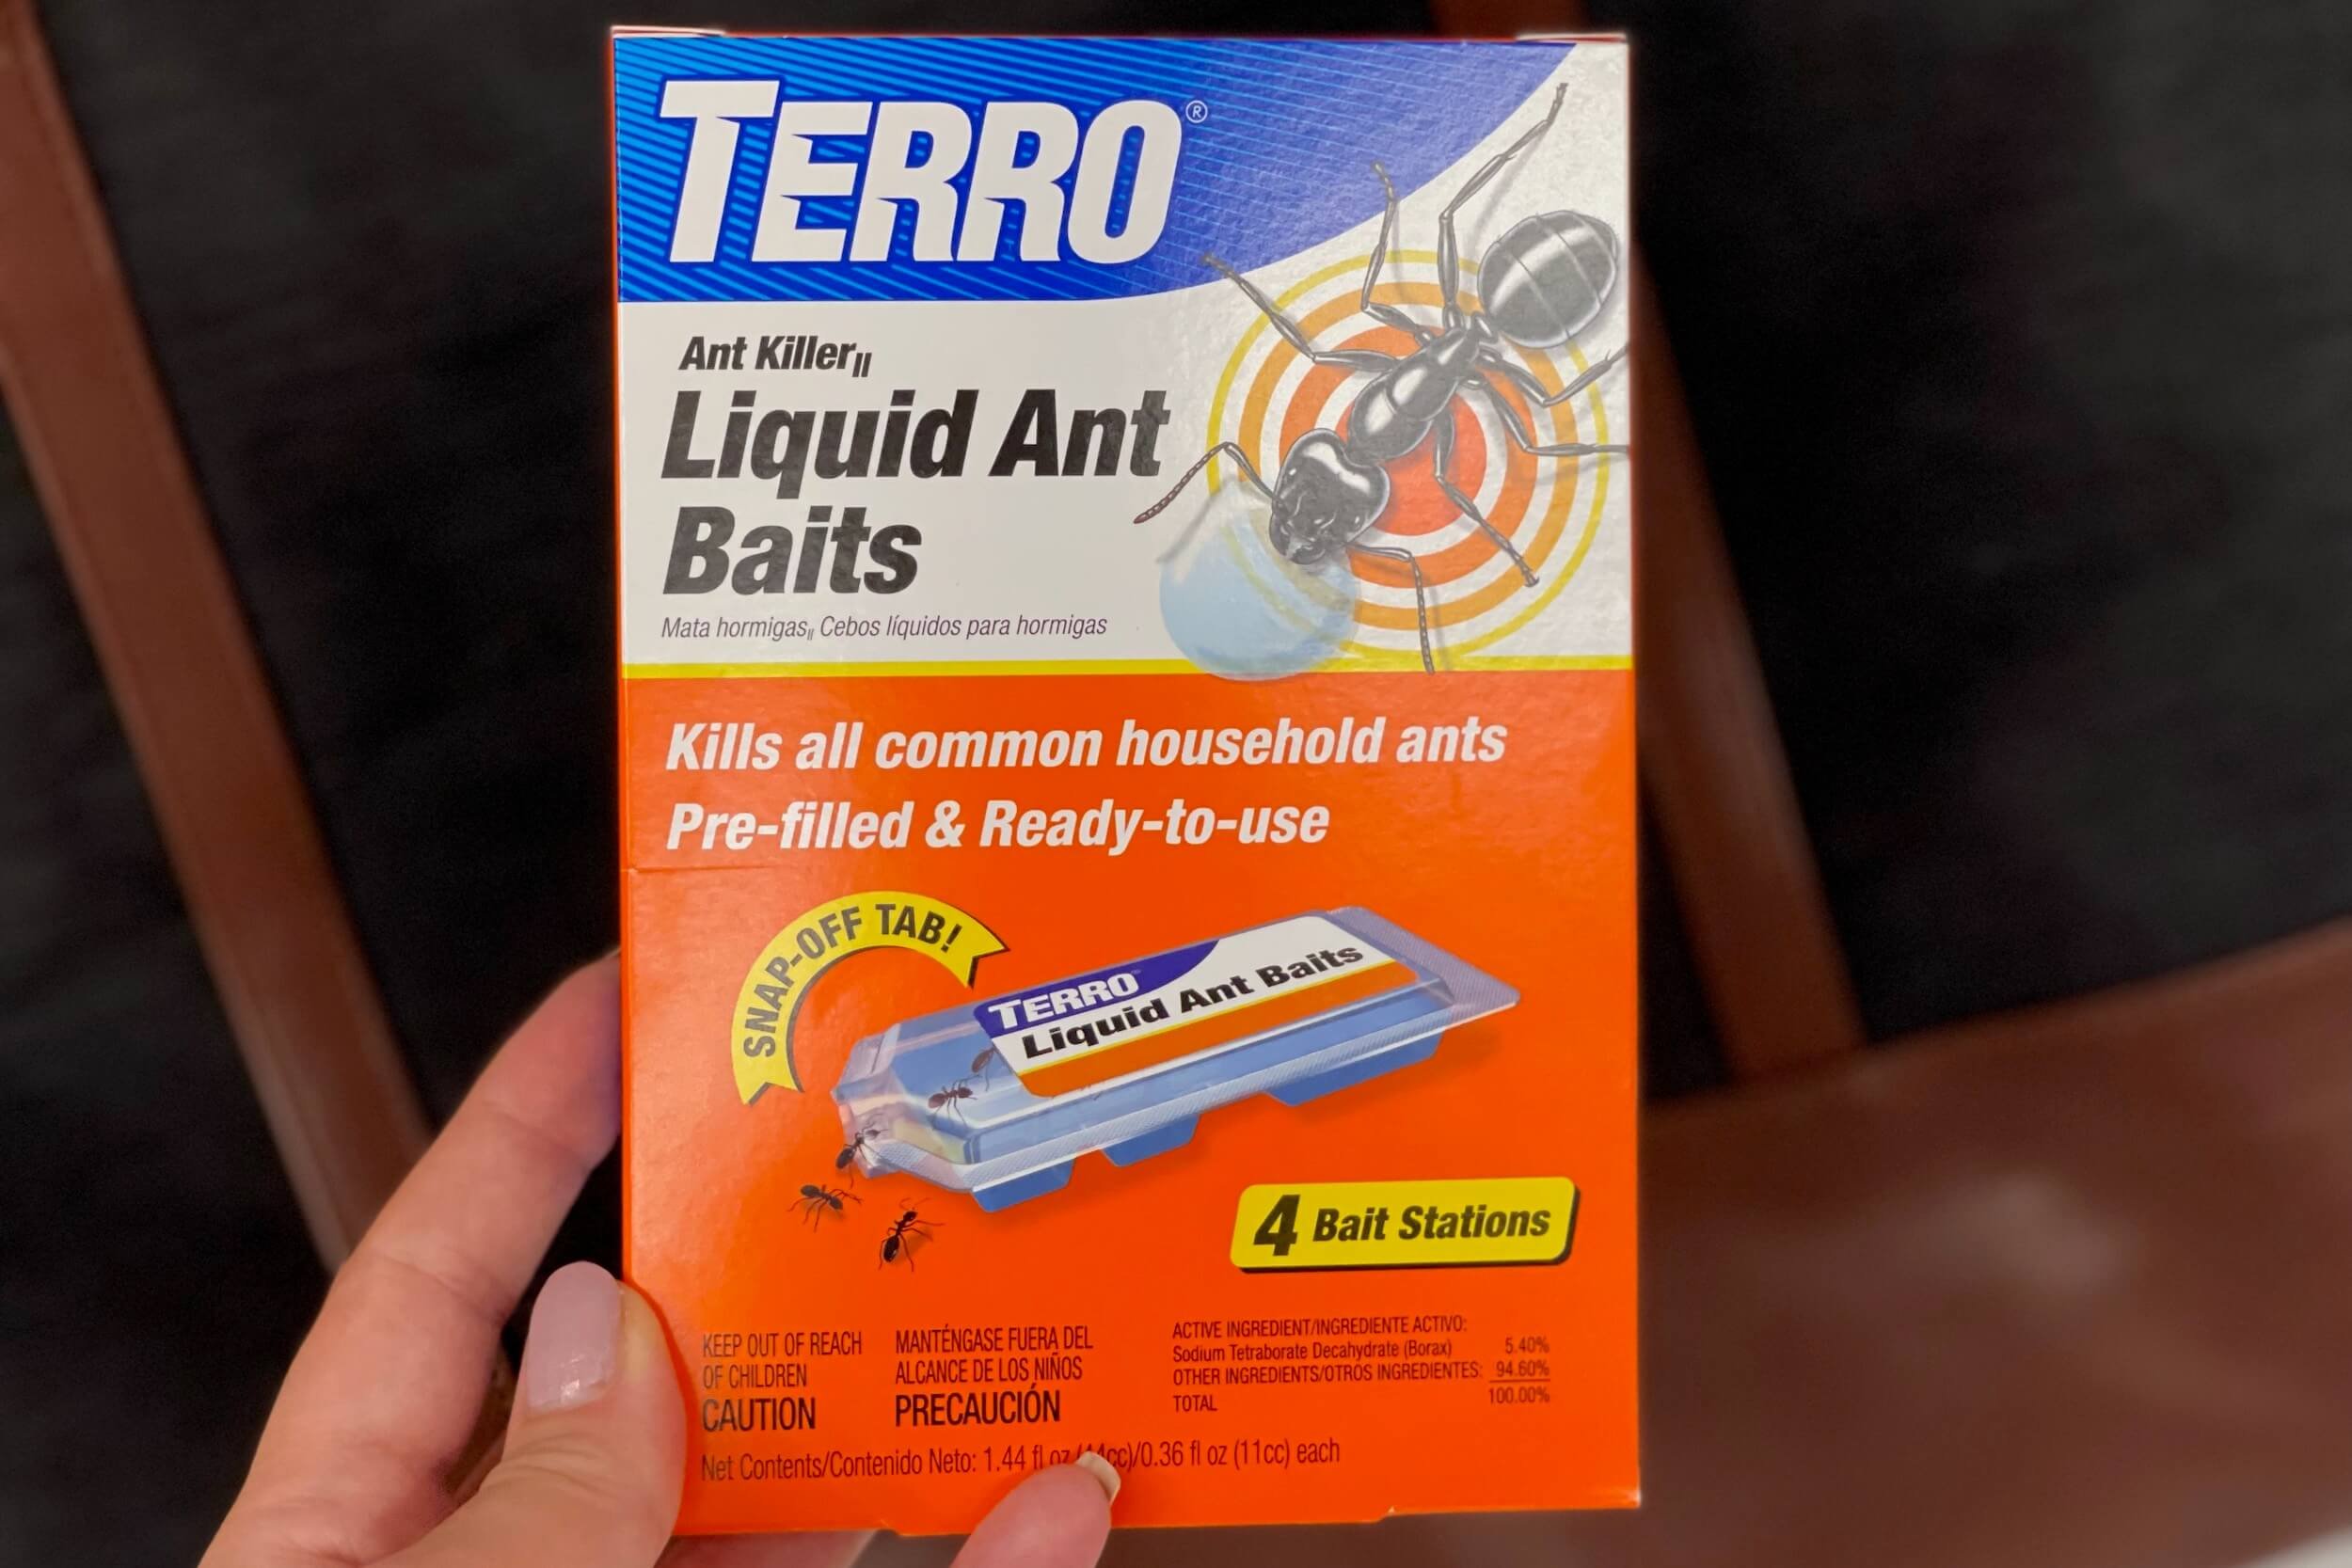 TERRO® Liquid Ant Baits